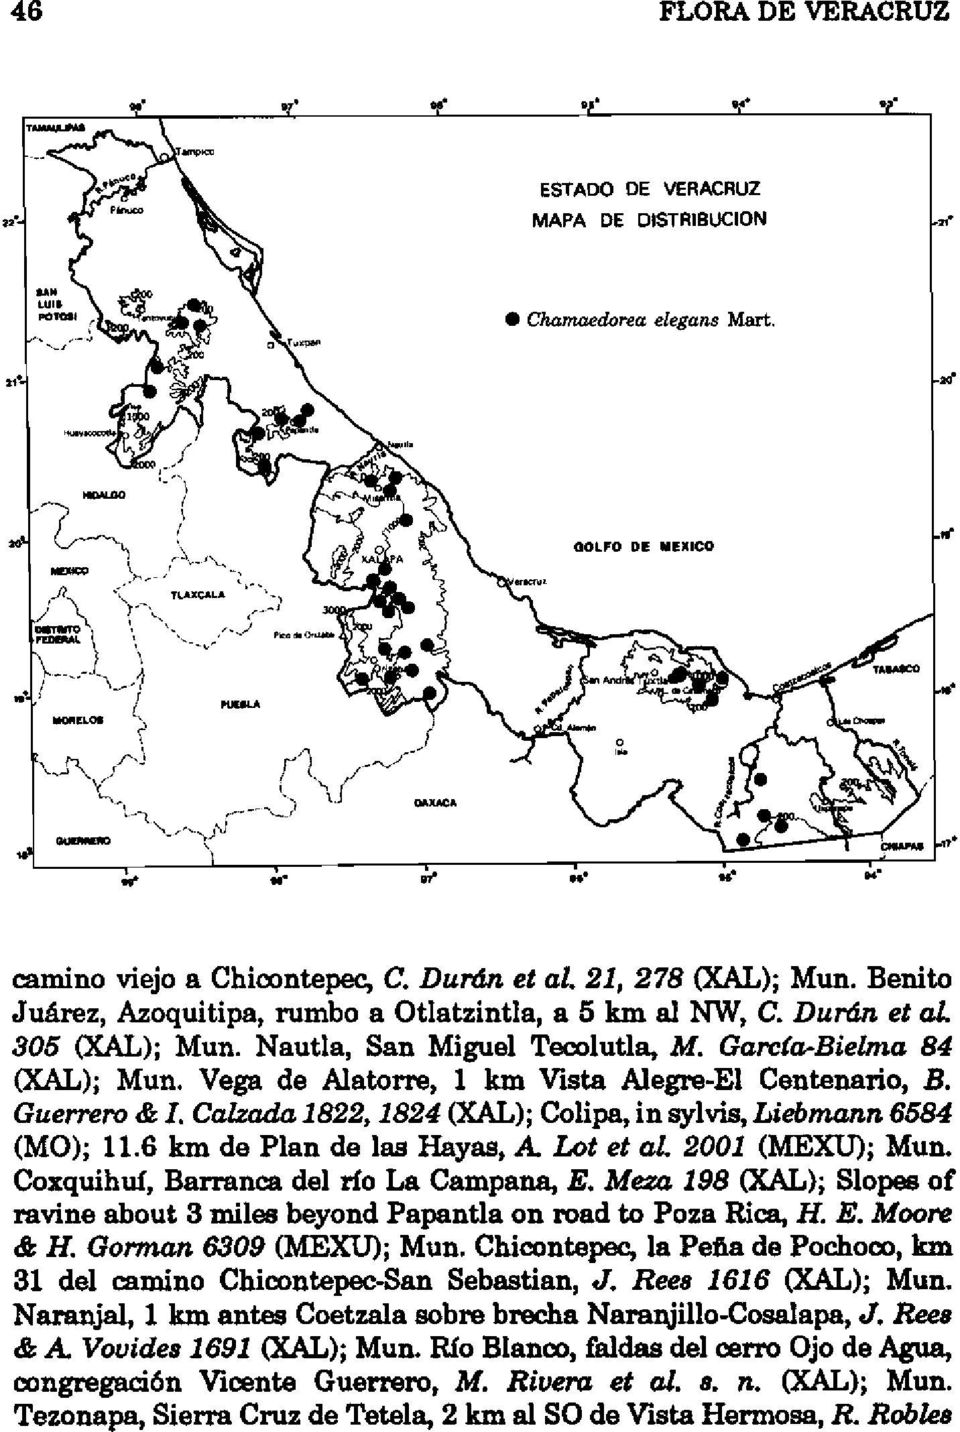 Vega de Alatorre, 1 km Vista Alegre-El Centenario, B. Guerrero & l. Calzada 1822, 1824 (}(AL); Colipa, in sylvis, Liebmann 6584 (MO); 11.6 km de Plan de las Hayas, A Lol el al. 2001 (MEXU); Mun.